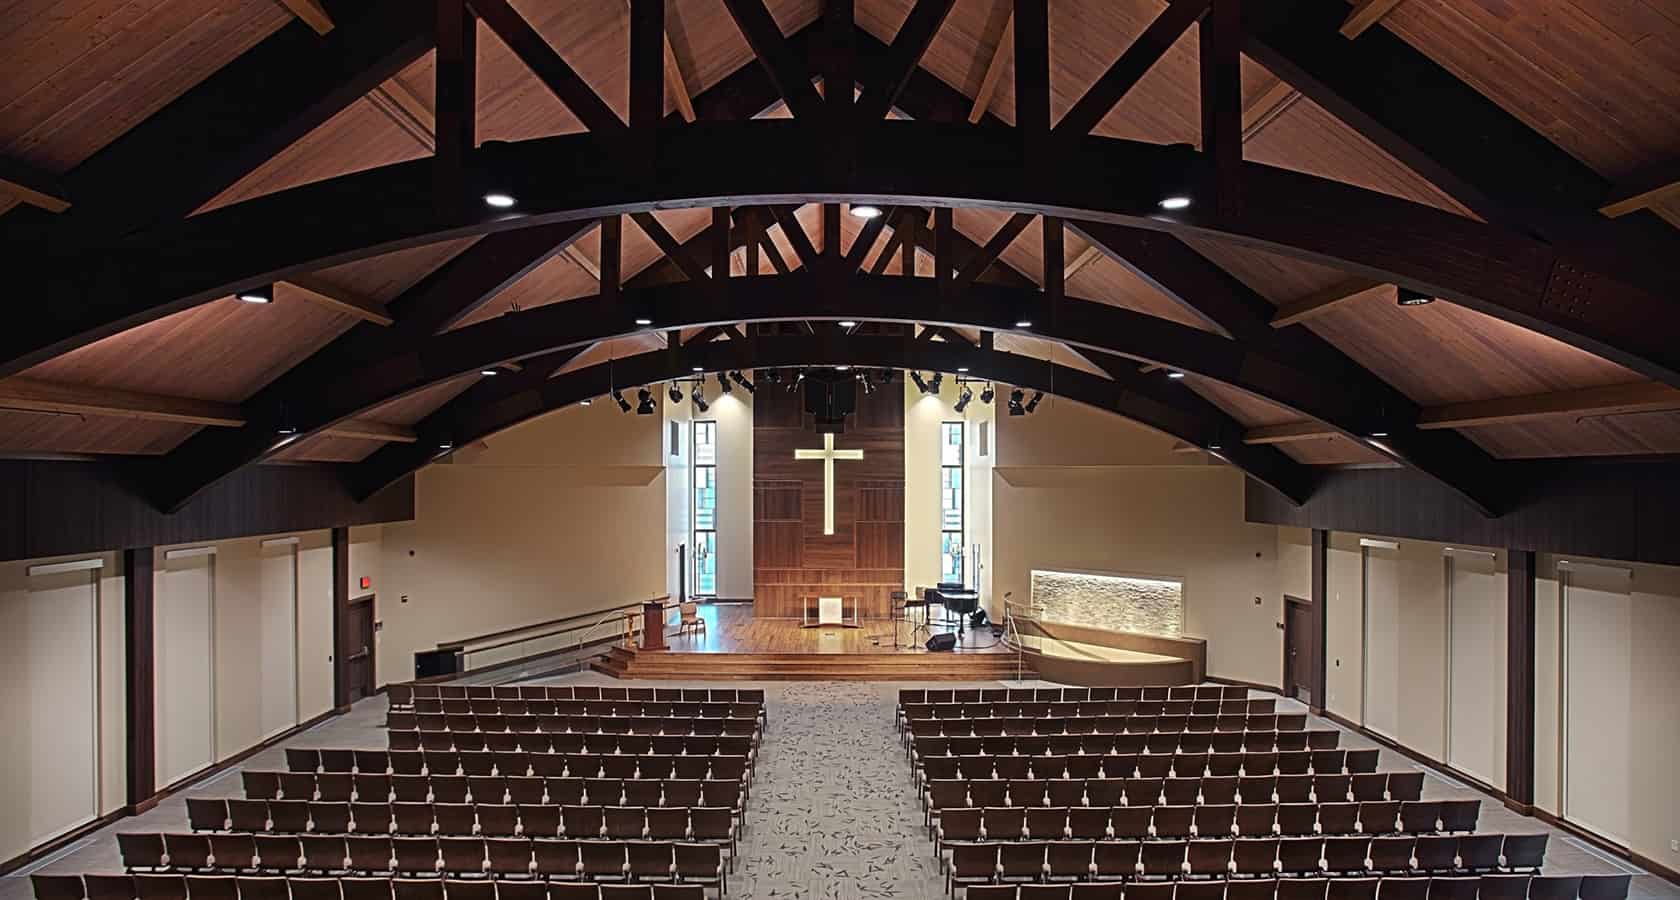 chapel interior